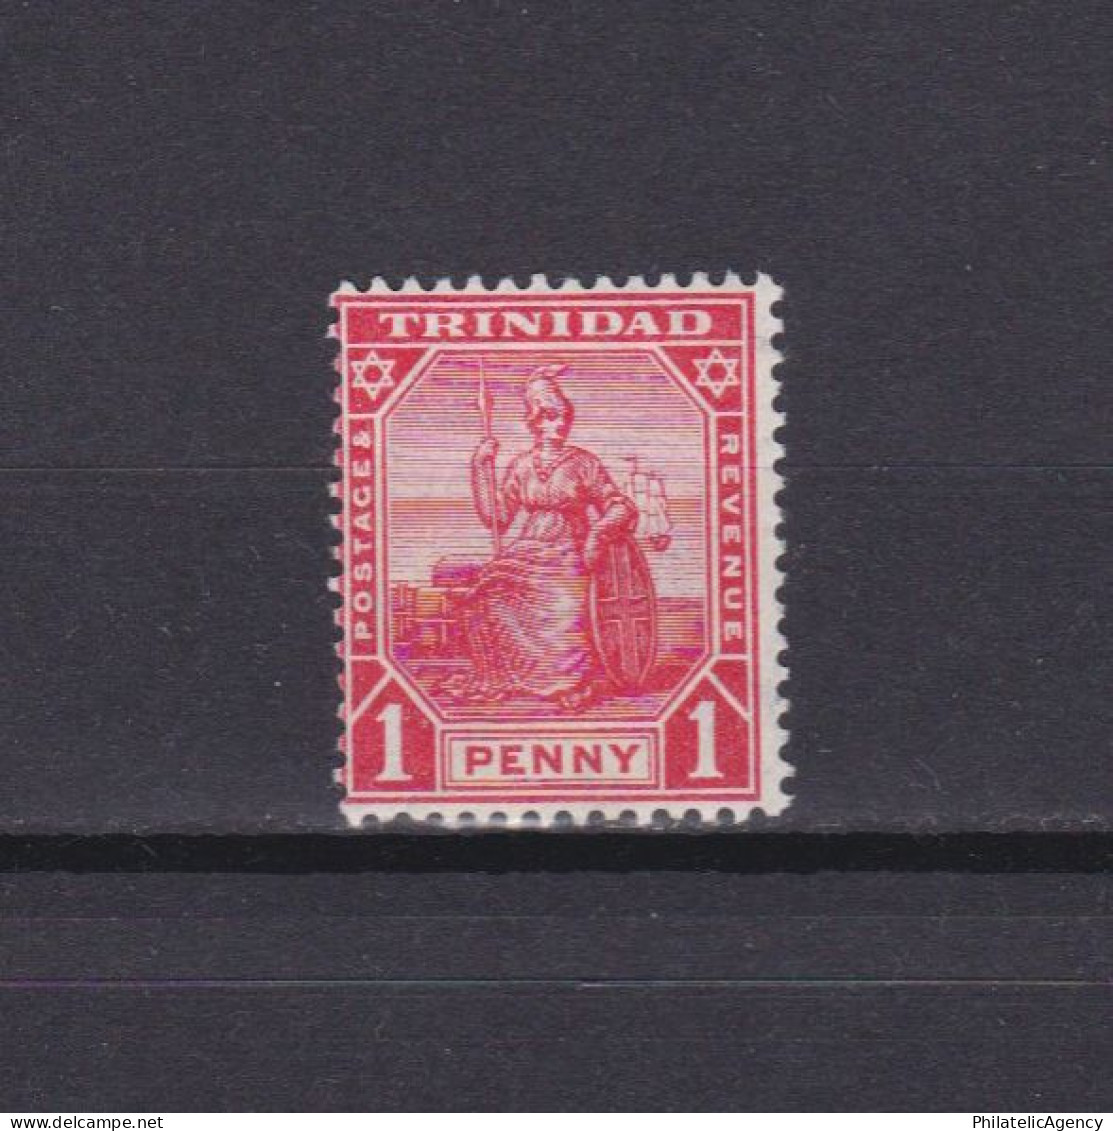 TRINIDAD 1909, SG #147, CV £15, MH - Trinidad & Tobago (...-1961)